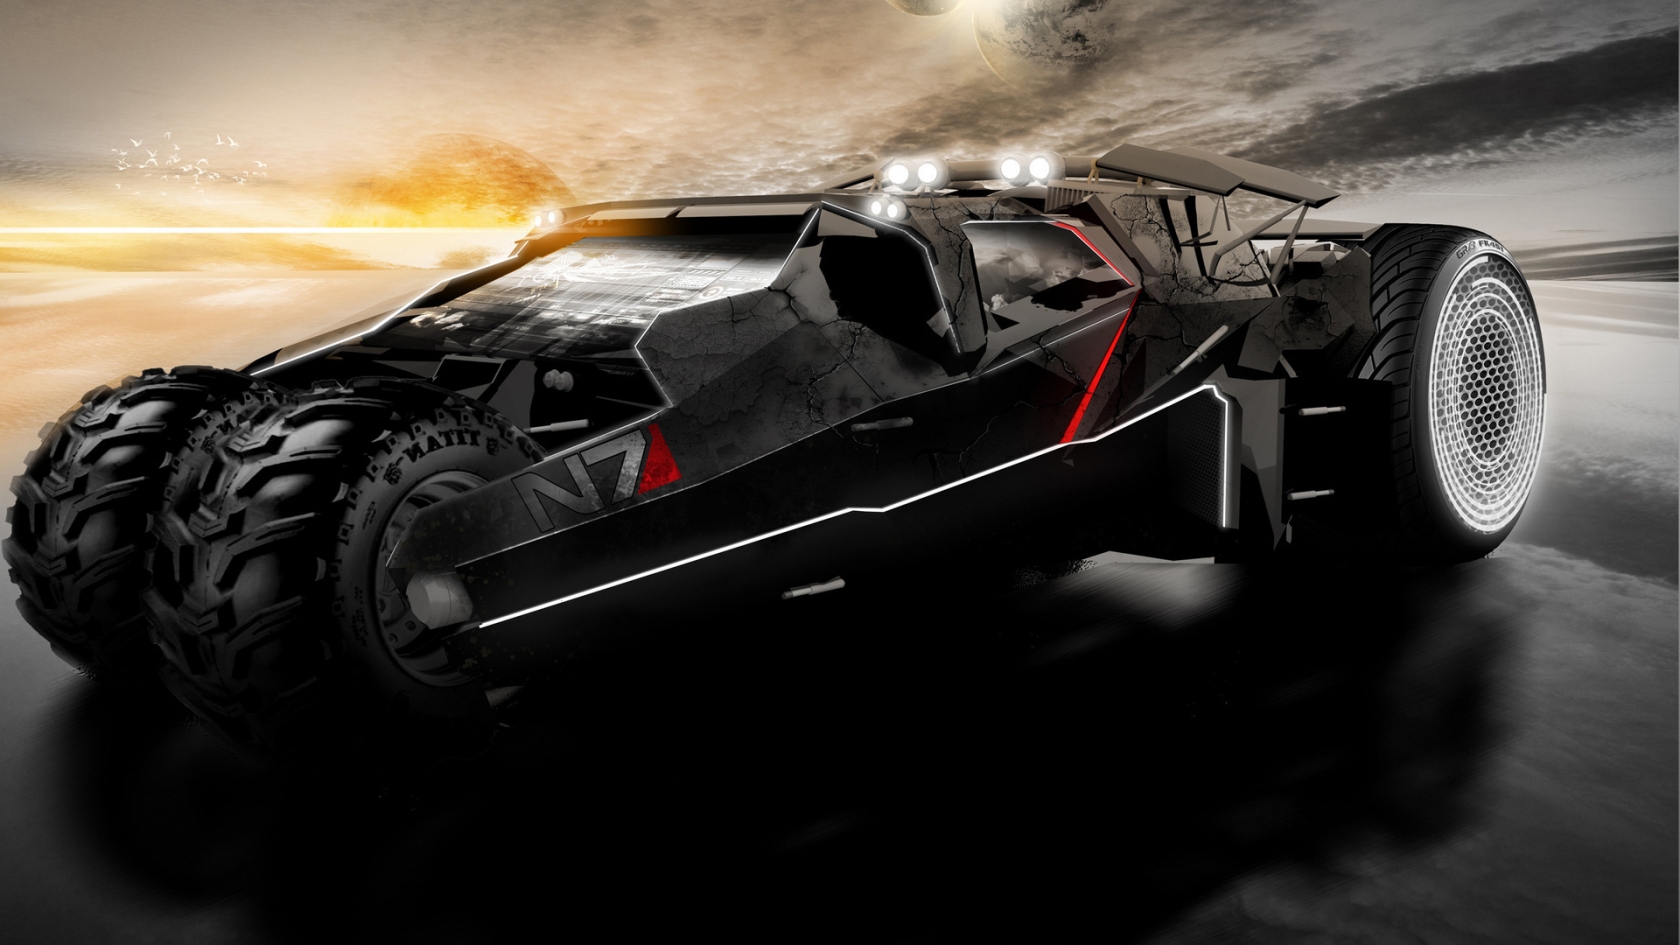 Mass Effect 2 Car for 1680 x 945 HDTV resolution